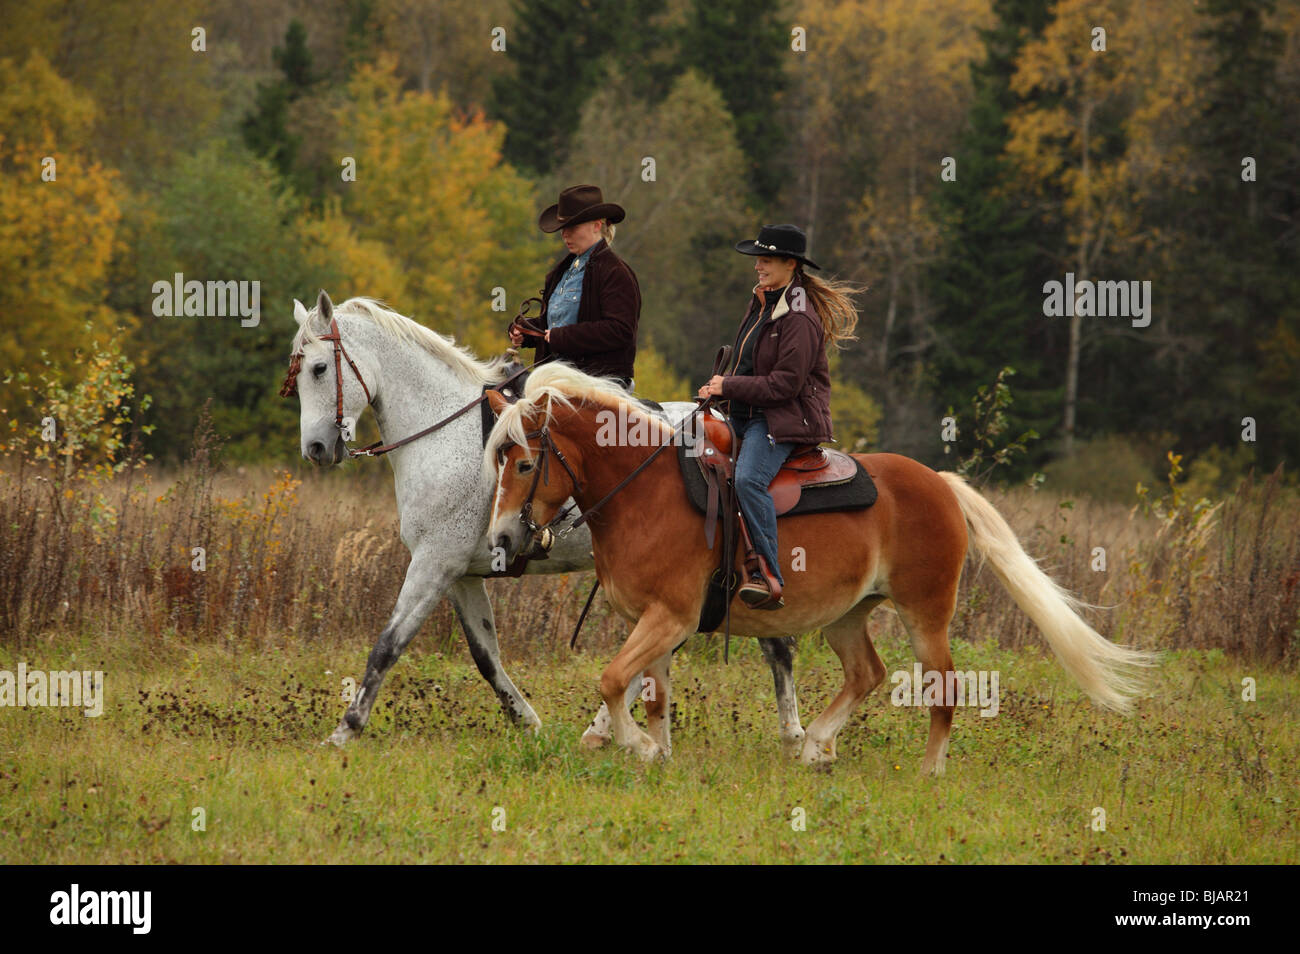 Deux femmes vêtues de vêtements et les chapeaux de cowboy de l'équitation western à cheval dans un ranch Banque D'Images